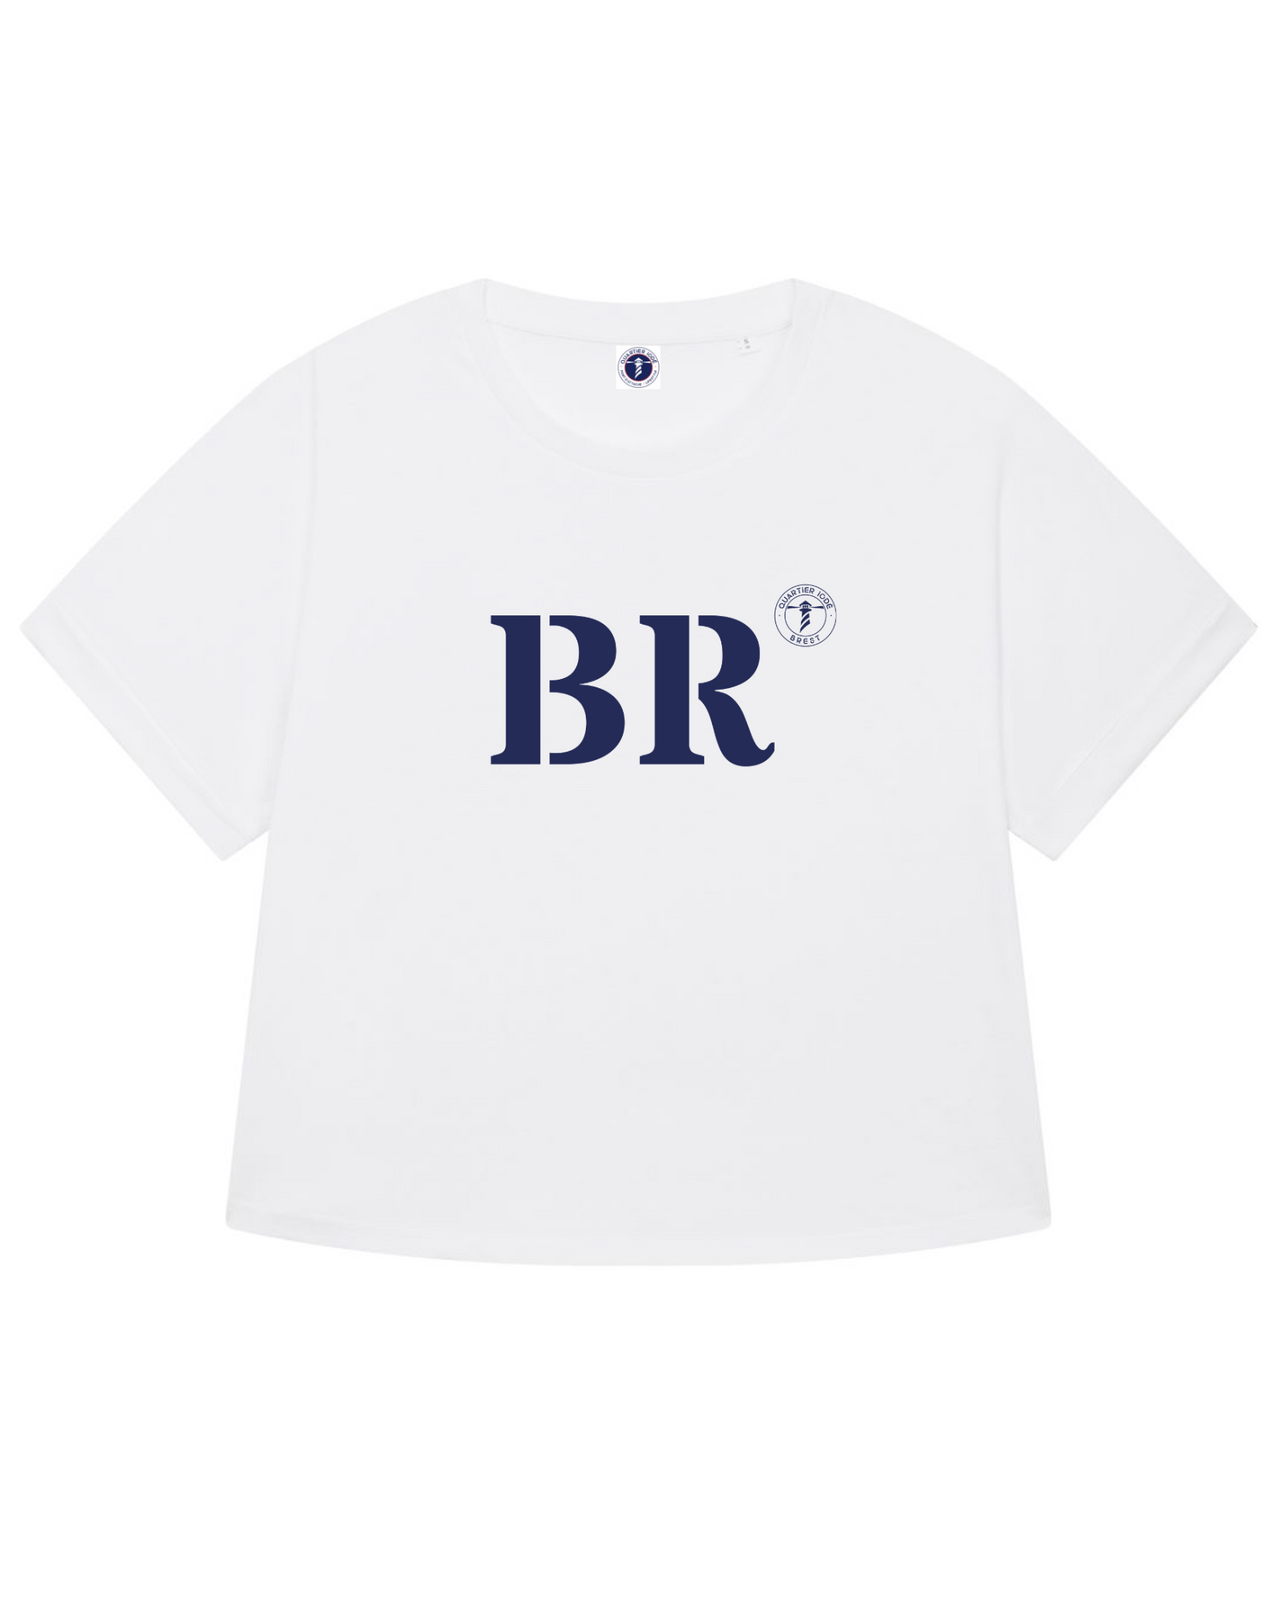 Tshirt Oversize breizh, de la marque bretonne Quartier Iodé. Floqué BR pour Brest. Idéal pour femme, style chic décontrcté.